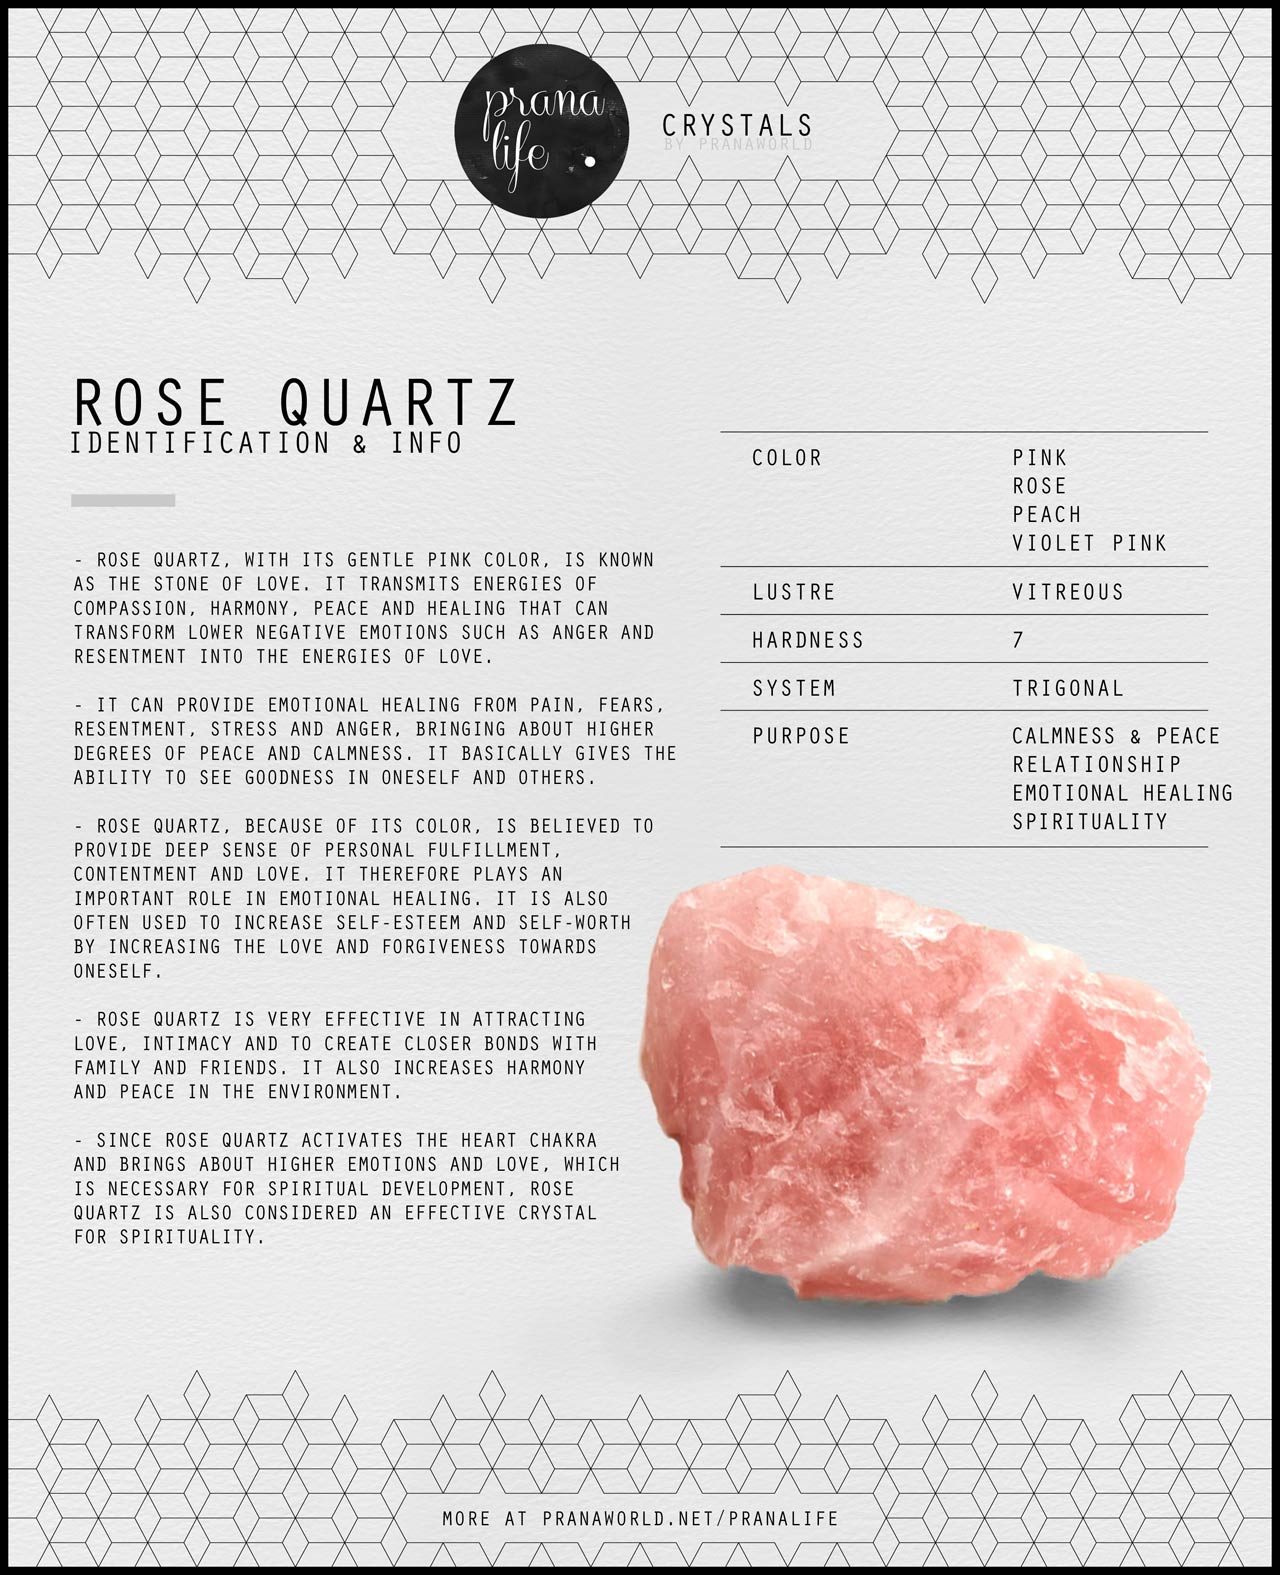 rose quartz purpose